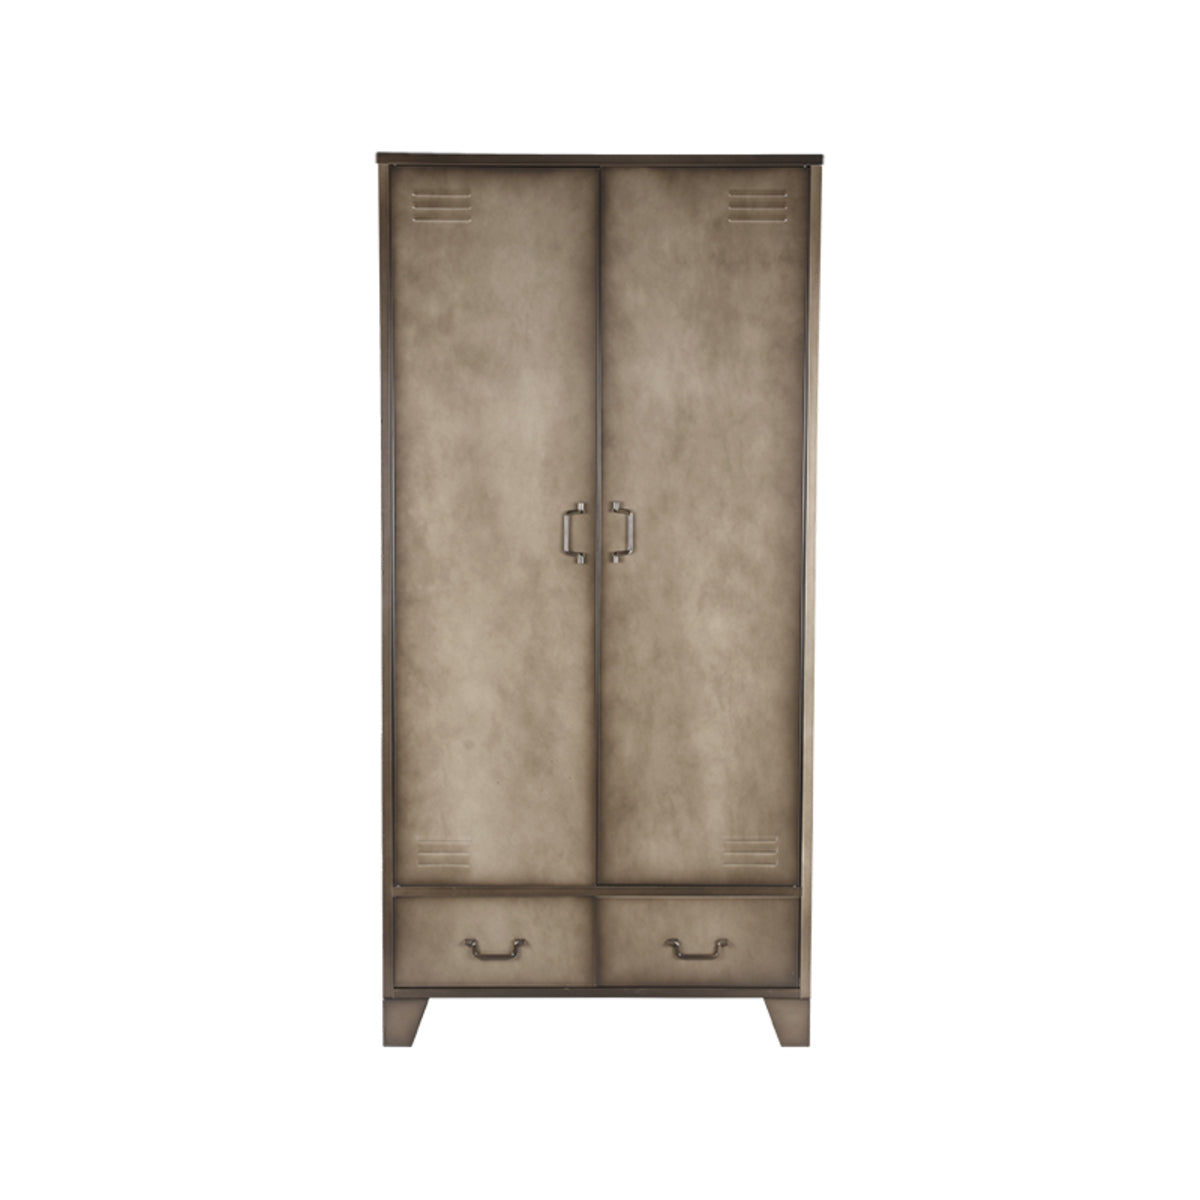 LABEL51 Storage Cabinet Fence - Vintage Metal - Metal - 2-Door